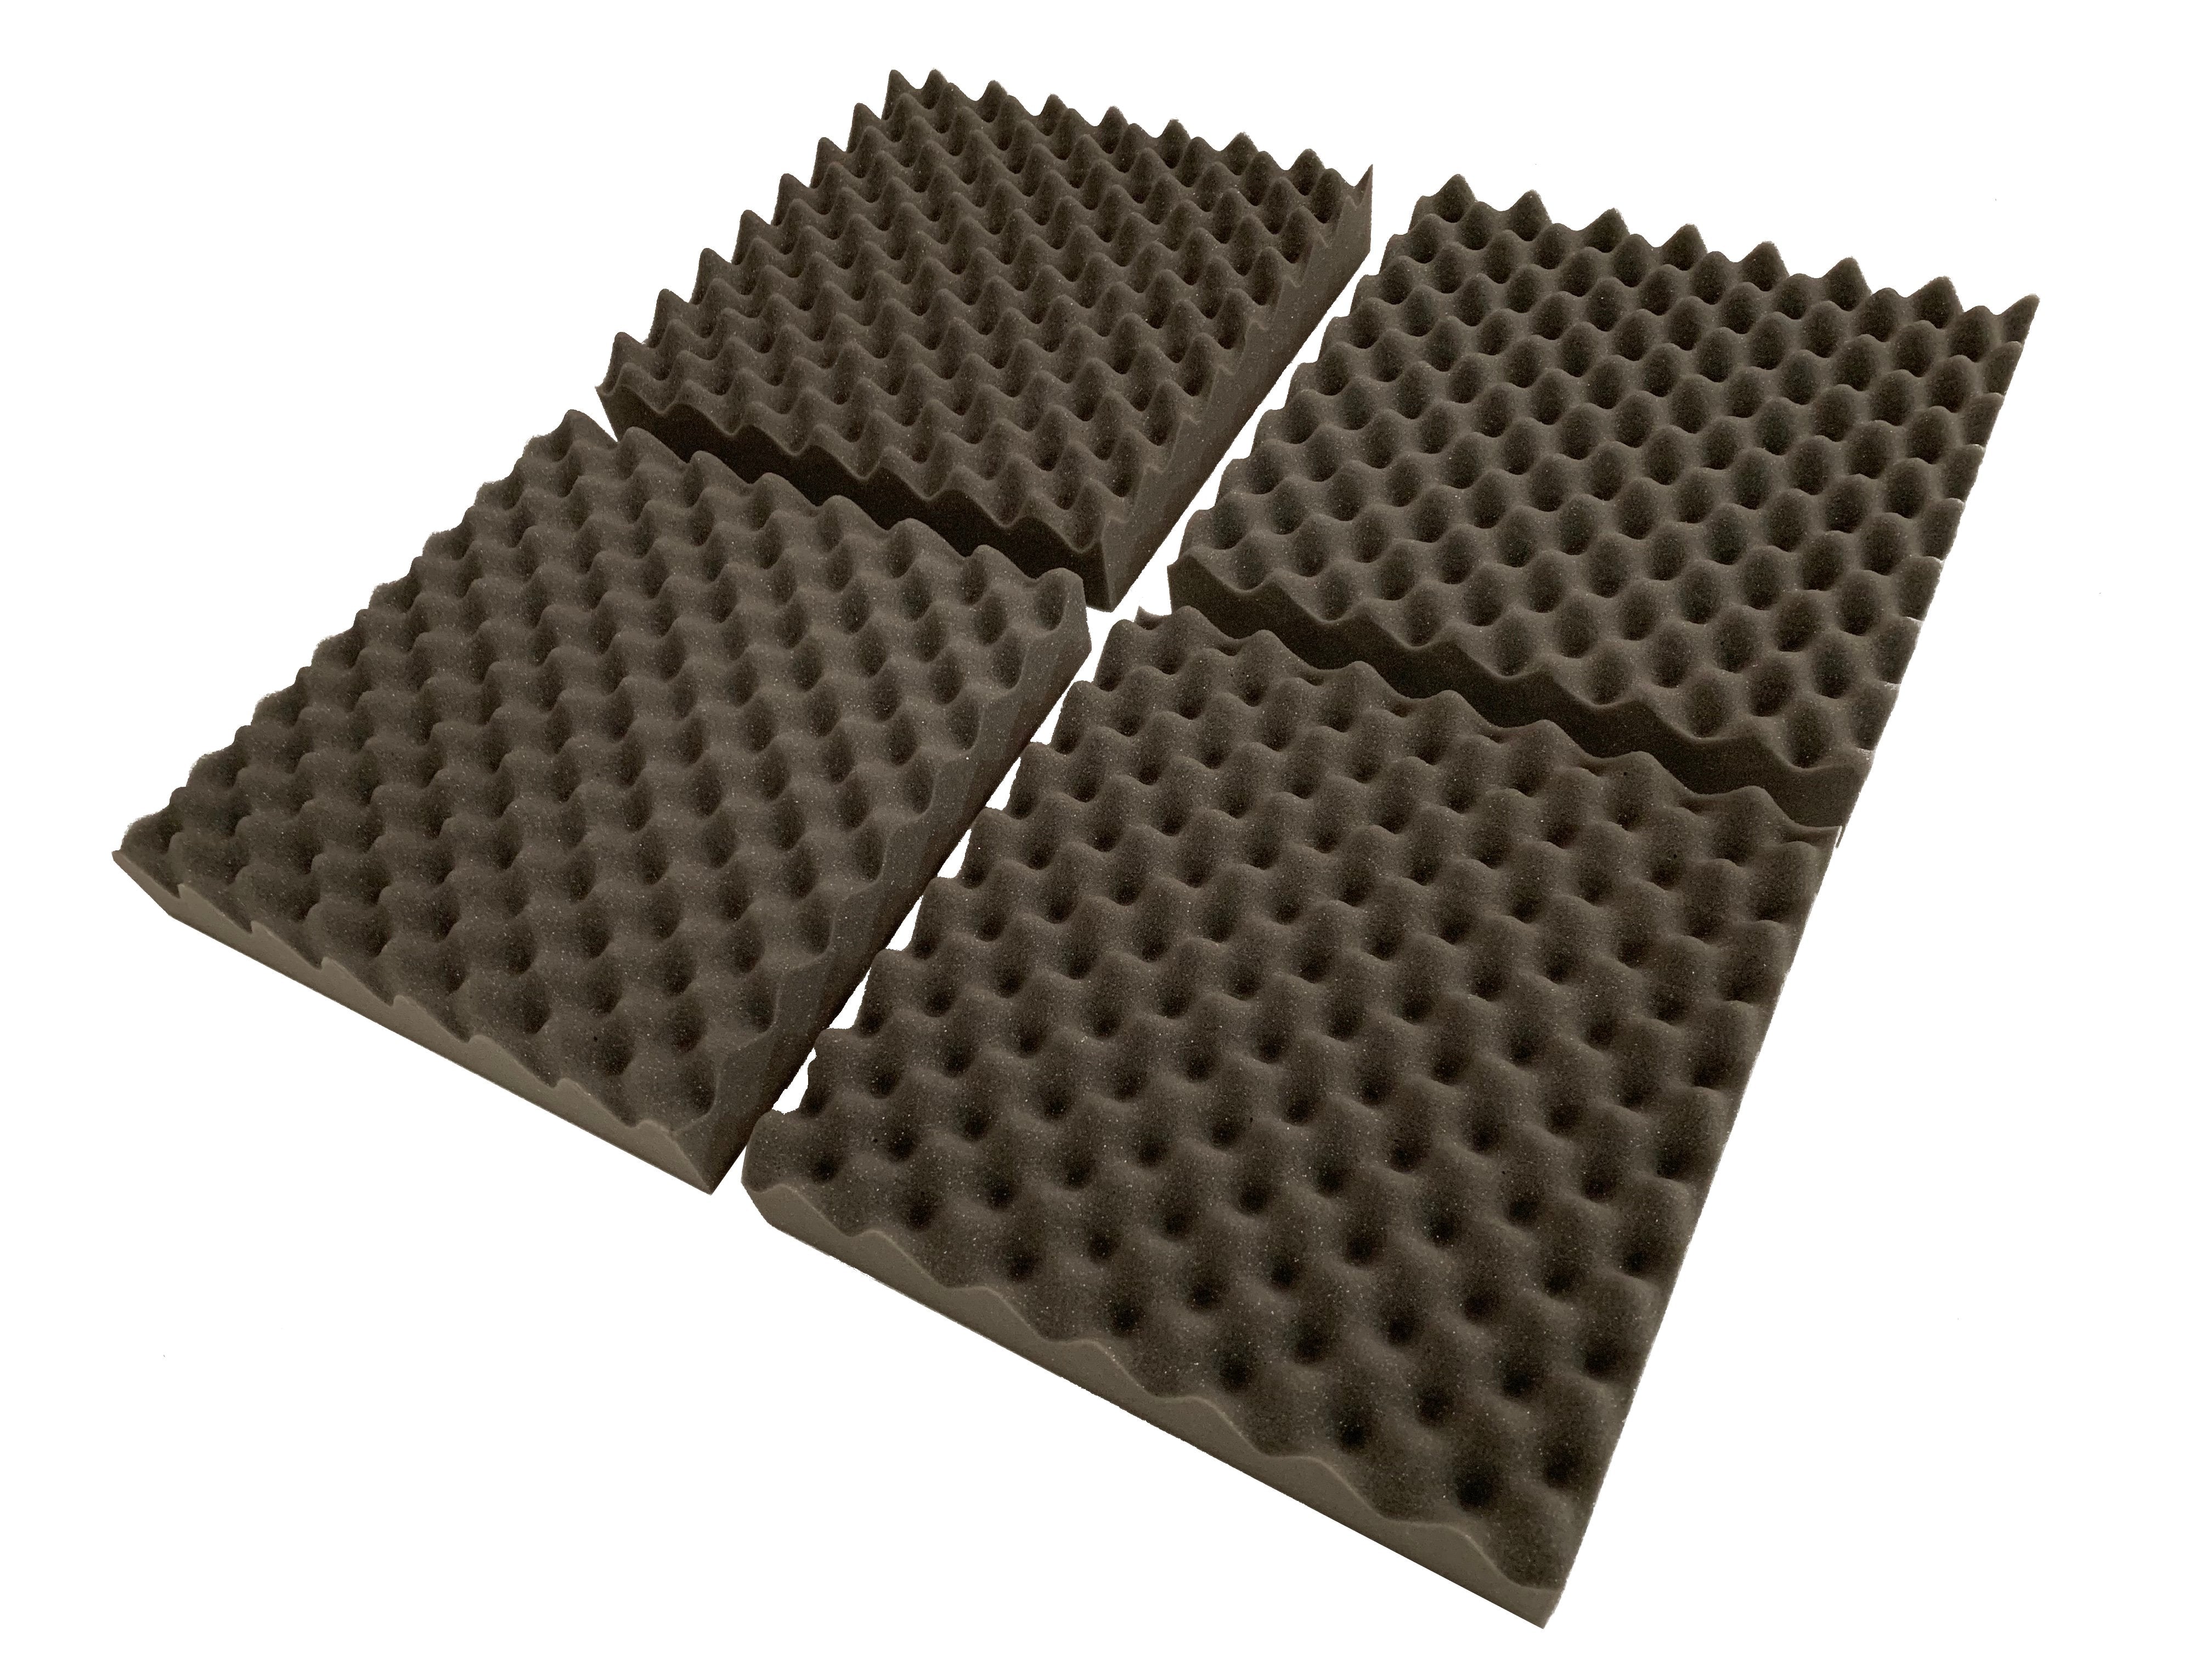 F.A.T. PRO 15" Acoustic Studio Foam Tile Kit - Advanced Acoustics